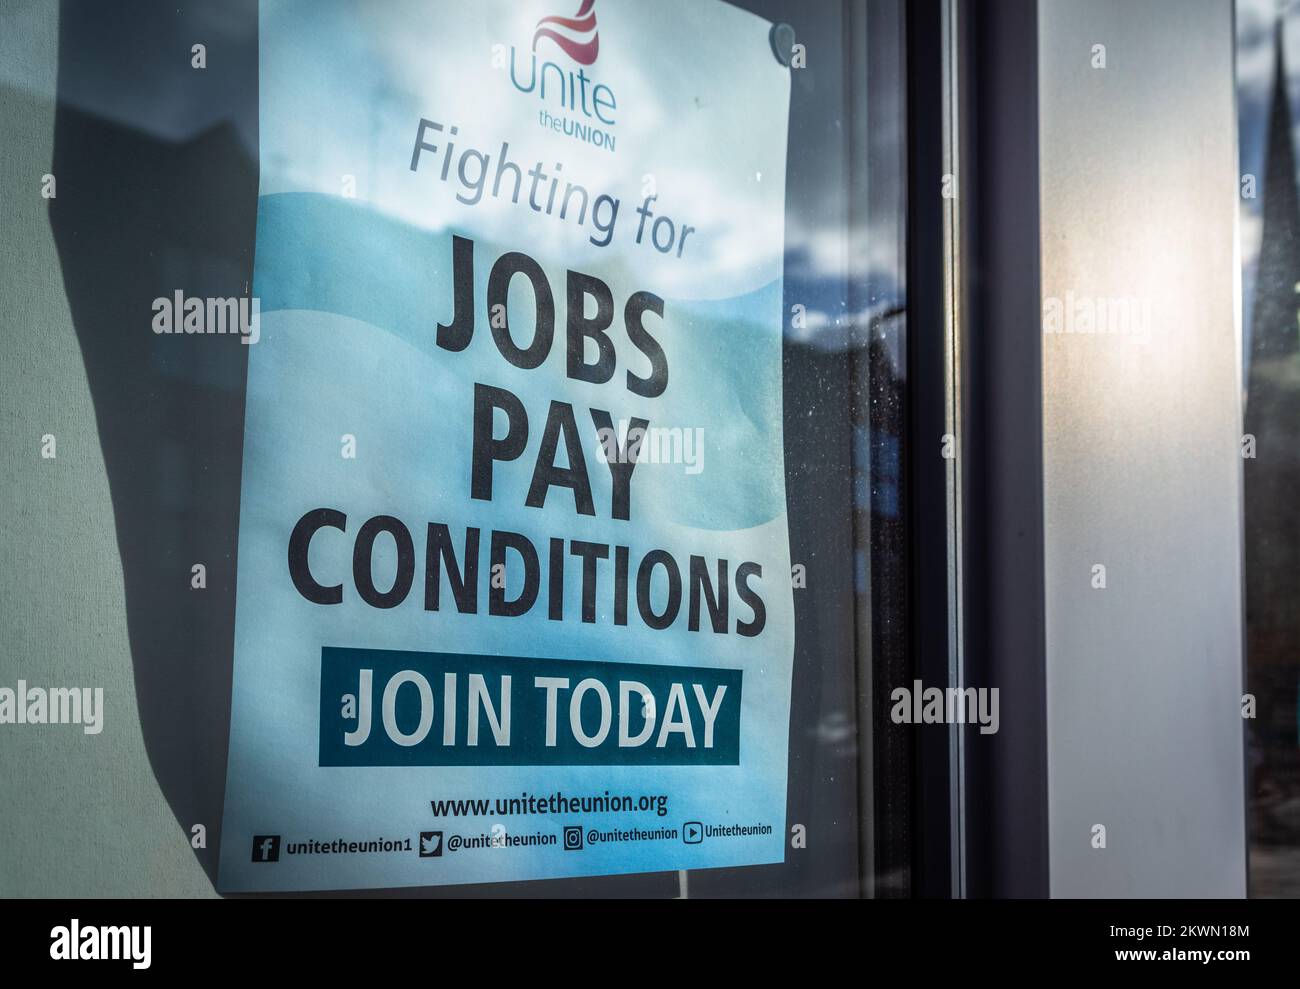 Unisci l'Unione che lotta per la condizione di retribuzione di posti di lavoro Iscriviti oggi poster presso una filiale Unite nel sud dell'Inghilterra, Hampshire, Regno Unito Foto Stock